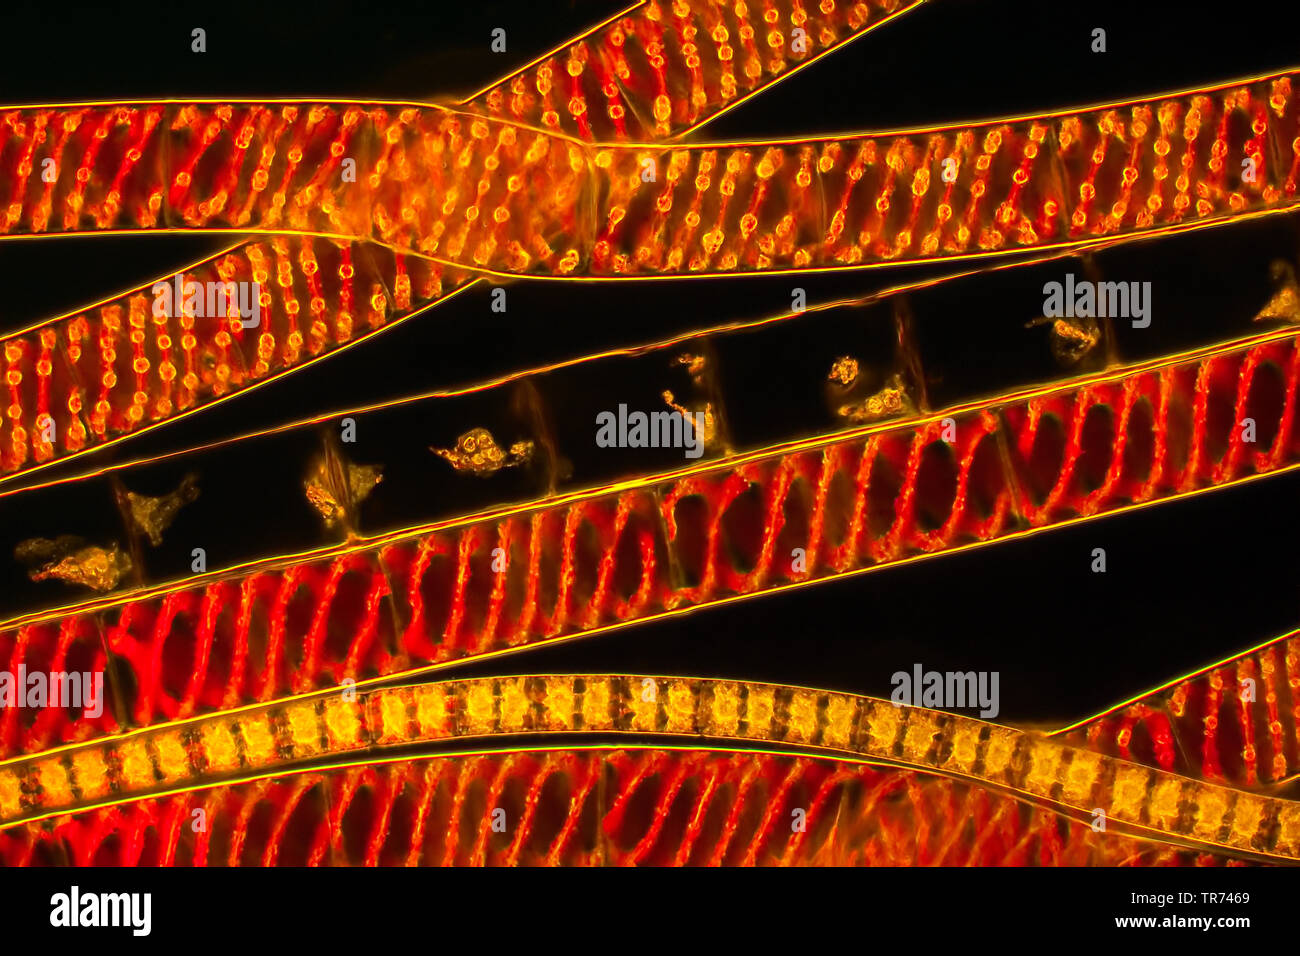 La soie de l'eau, mermaid's tresses, une couverture contre les mauvaises herbes (Spirogyra spec.), Image fluorescente de soies de l'eau, x 120, Allemagne Banque D'Images